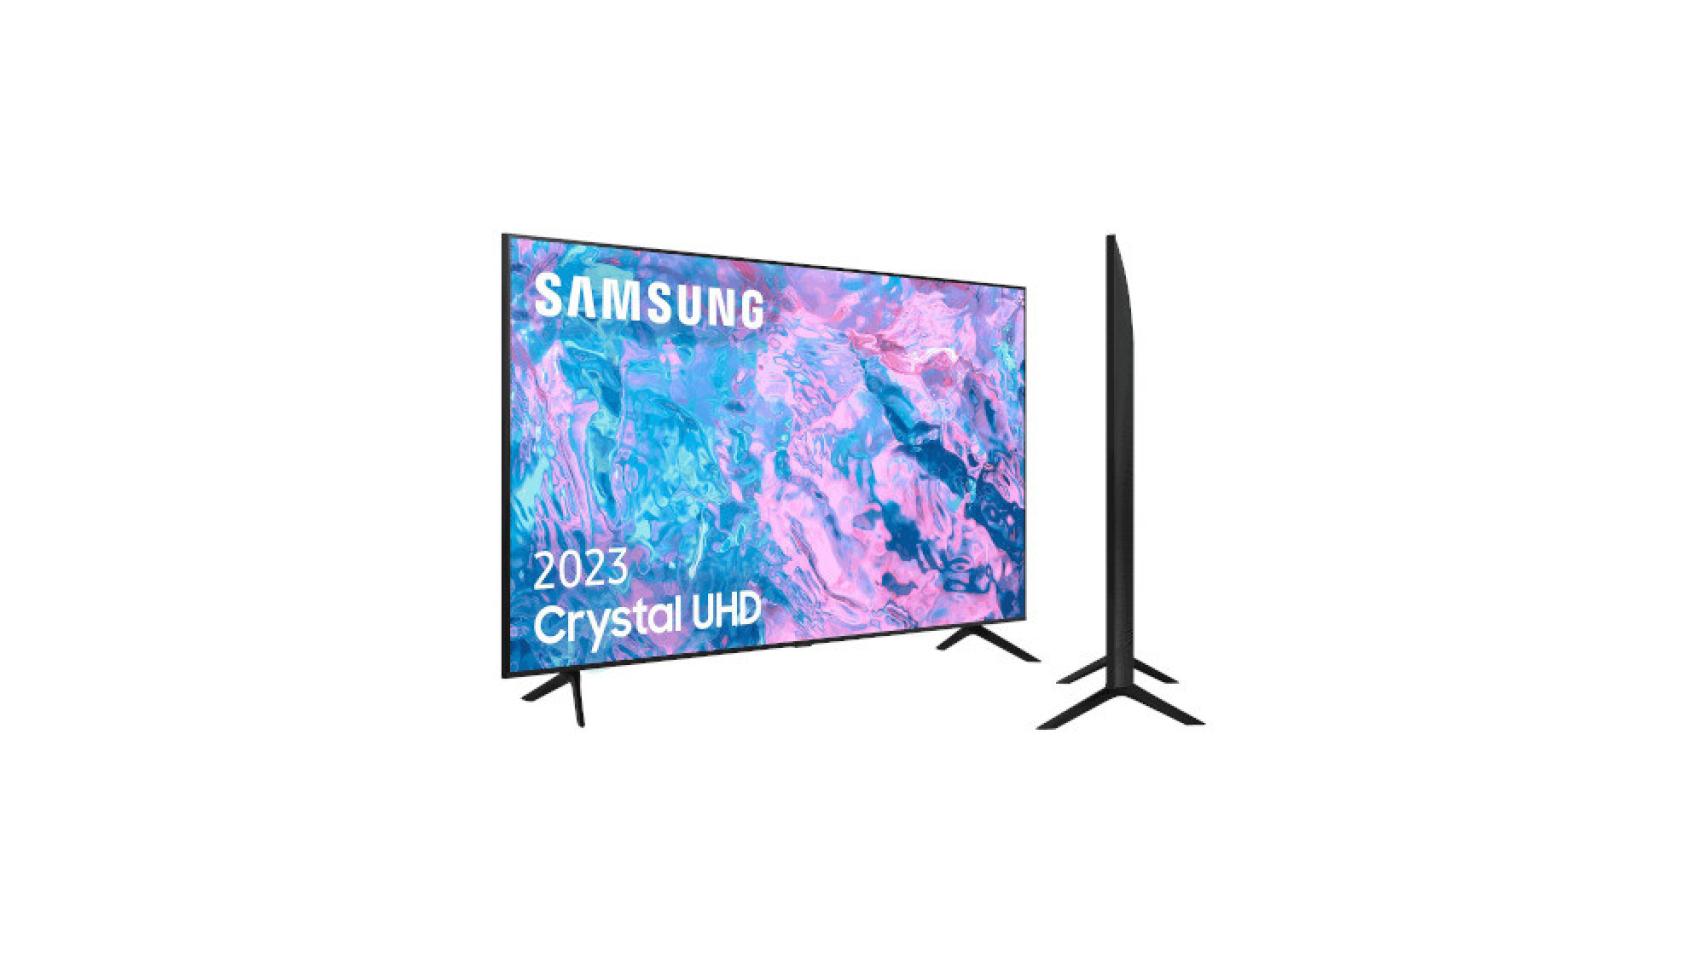 Rebajada esta gigantesca smart TV Samsung de 75 pulgadas y